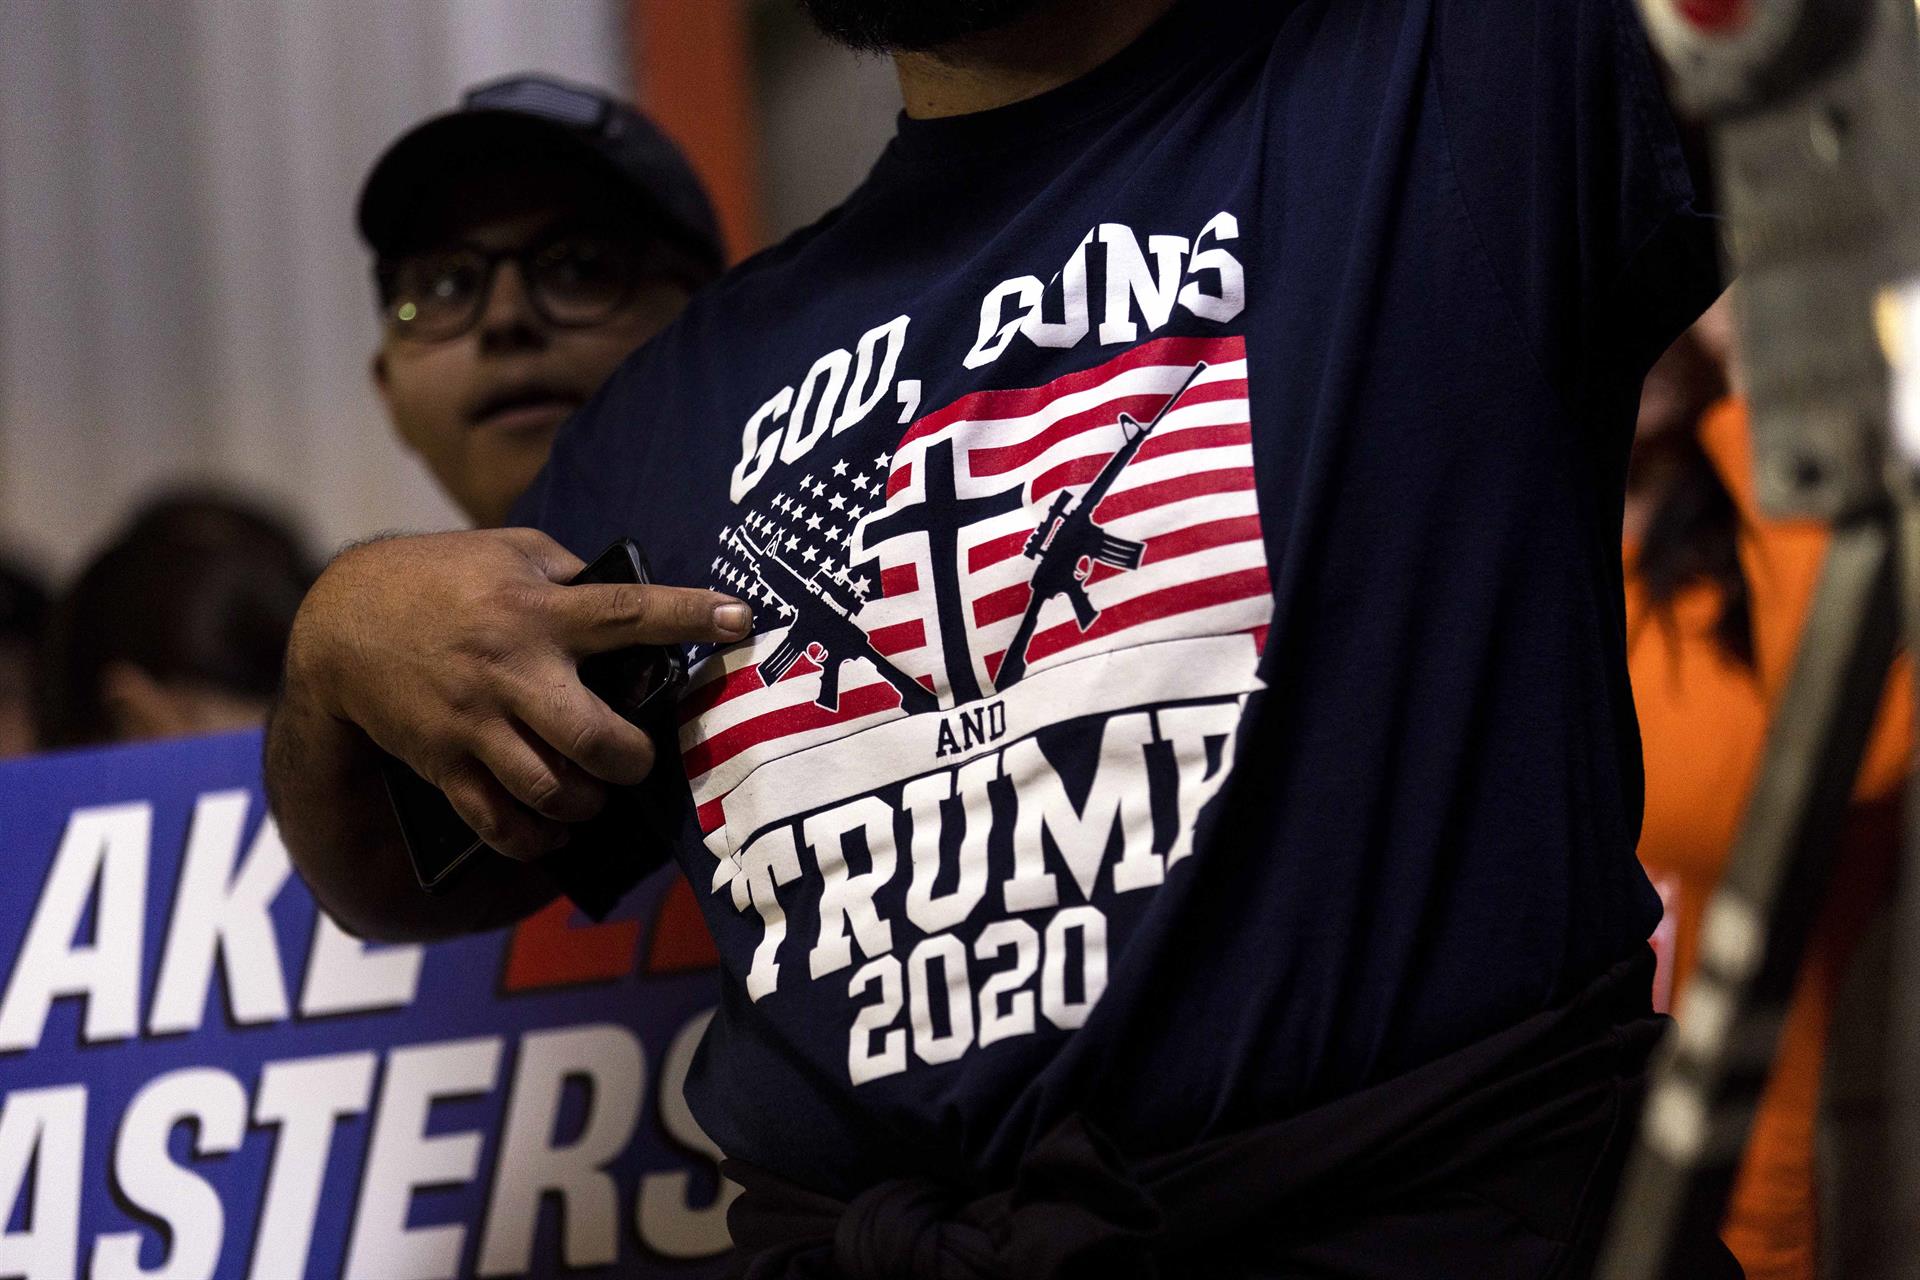 Fotografía de archivo del 06 noviembre donde aparece un simpatizante republicano mientras señala a su camiseta que dice 